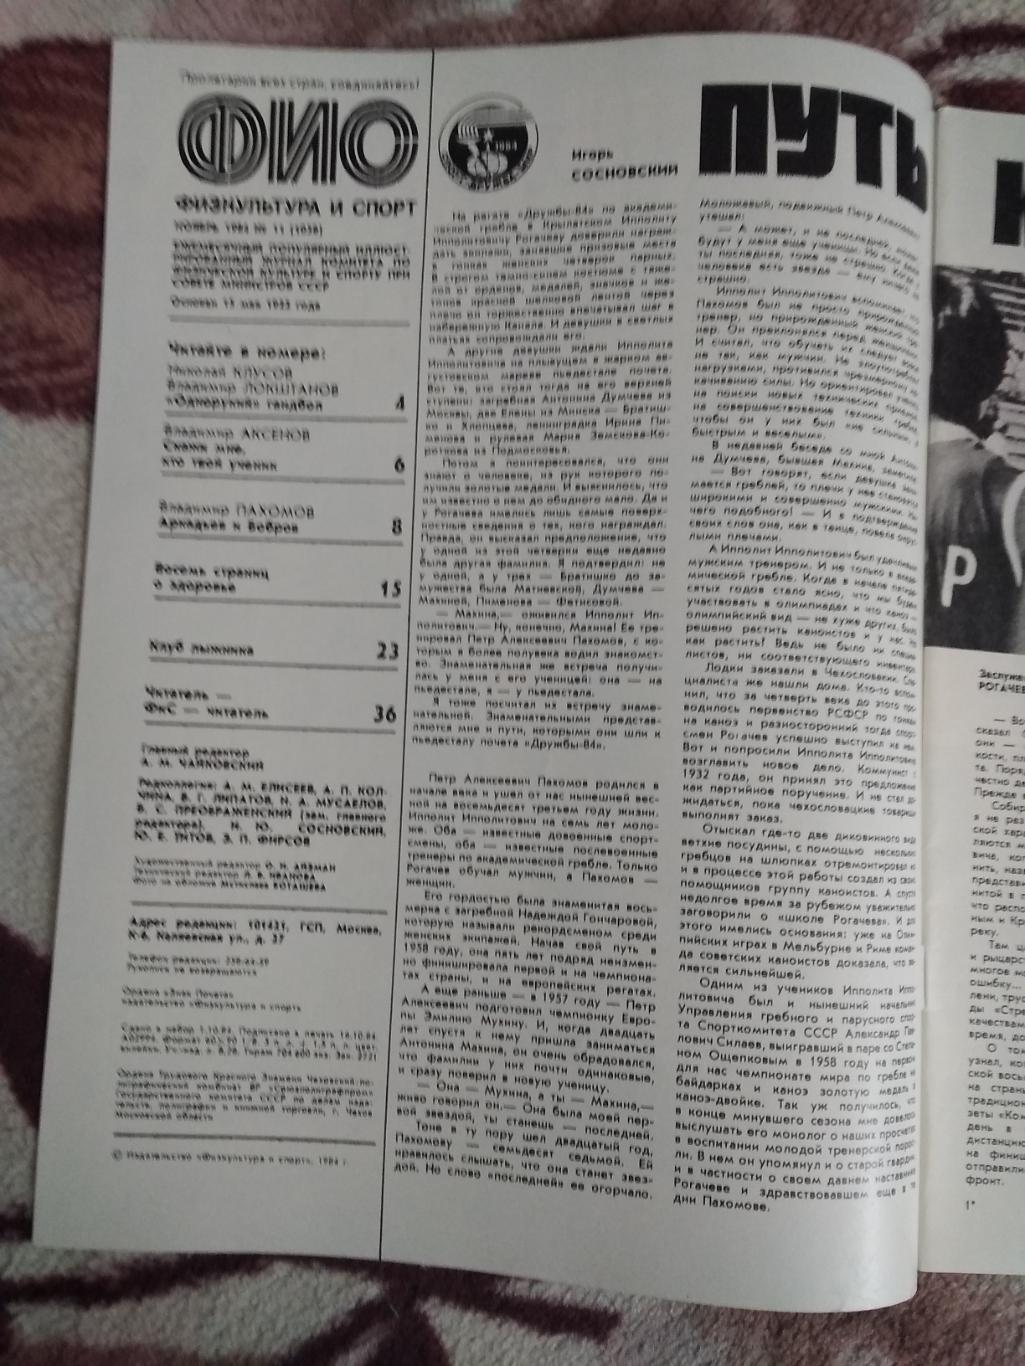 Журнал.Физкультура и спорт № 11 1984 г. (ФиС). 1